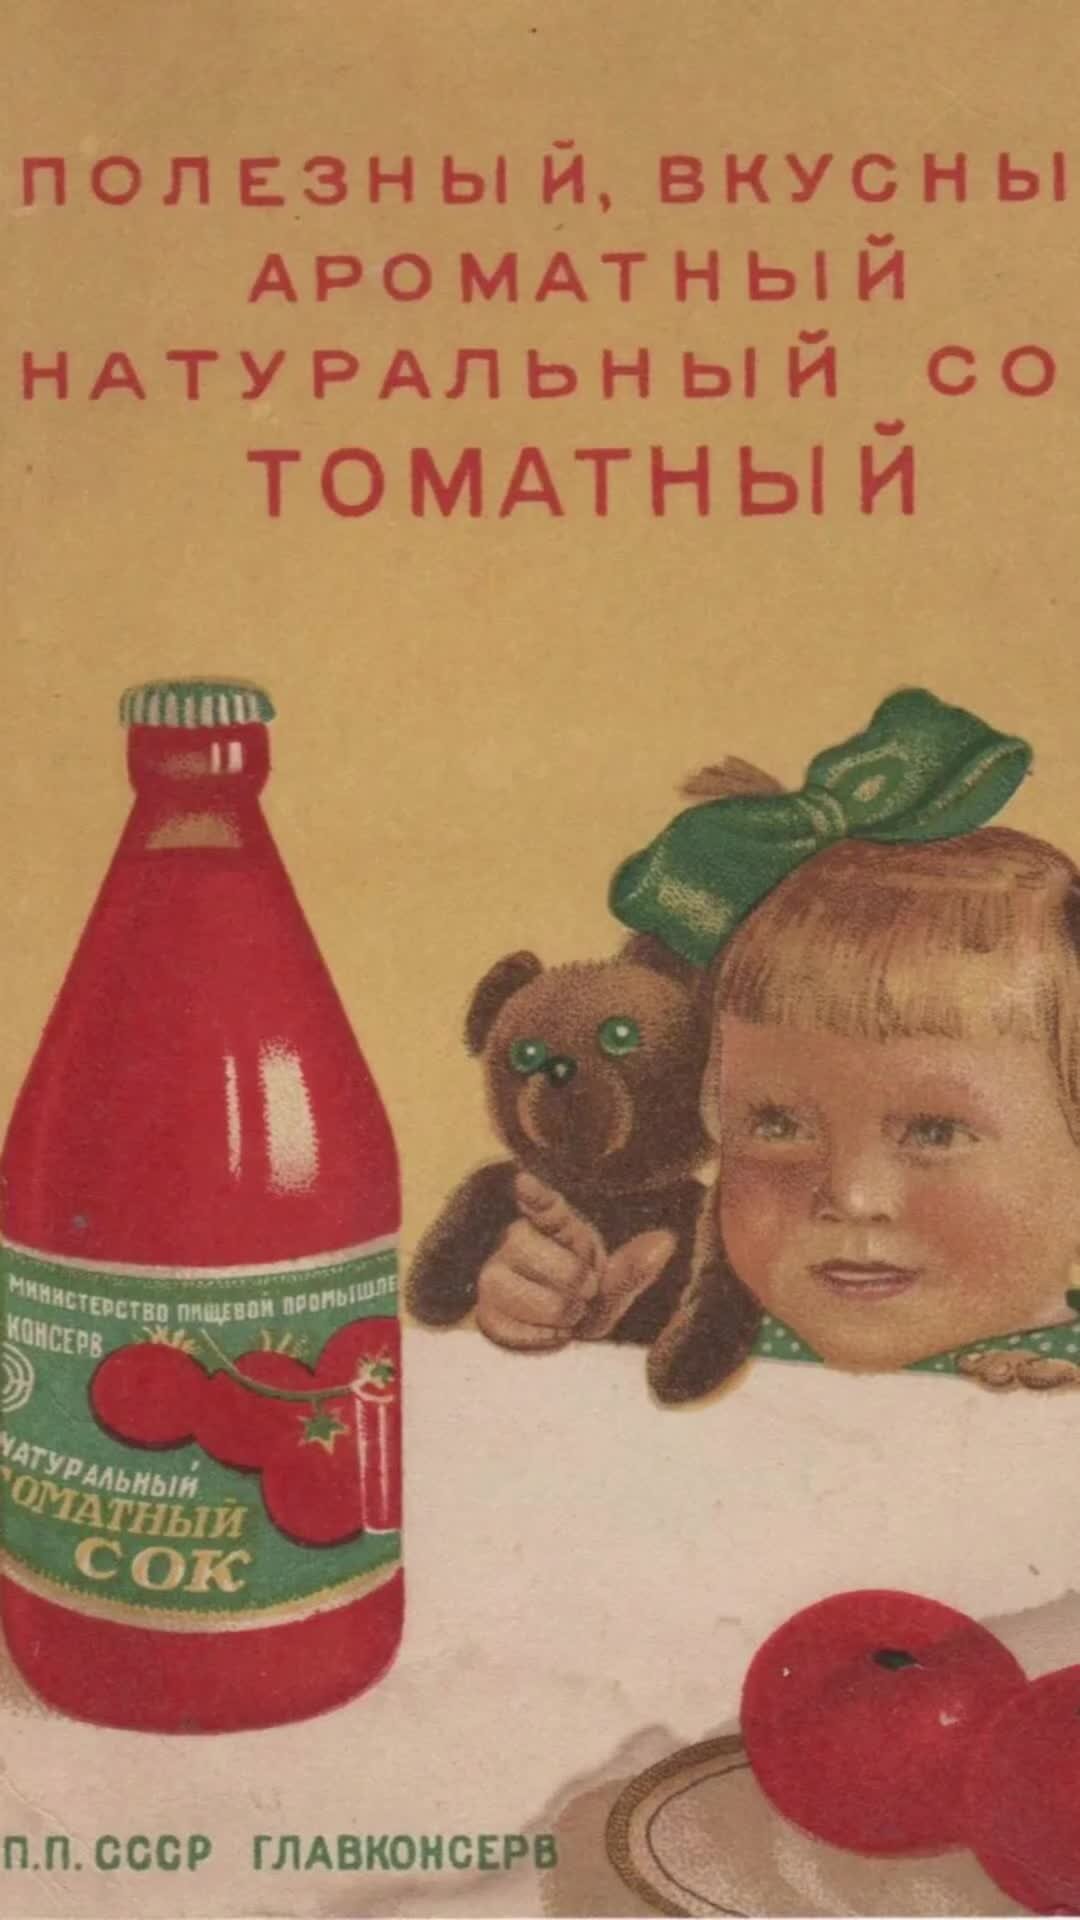 Пейте соки стихи. Реклама СССР пейте томатный сок. Советские рекламные плакаты. Советская реклама томатного сока. Советская реклама продуктов.